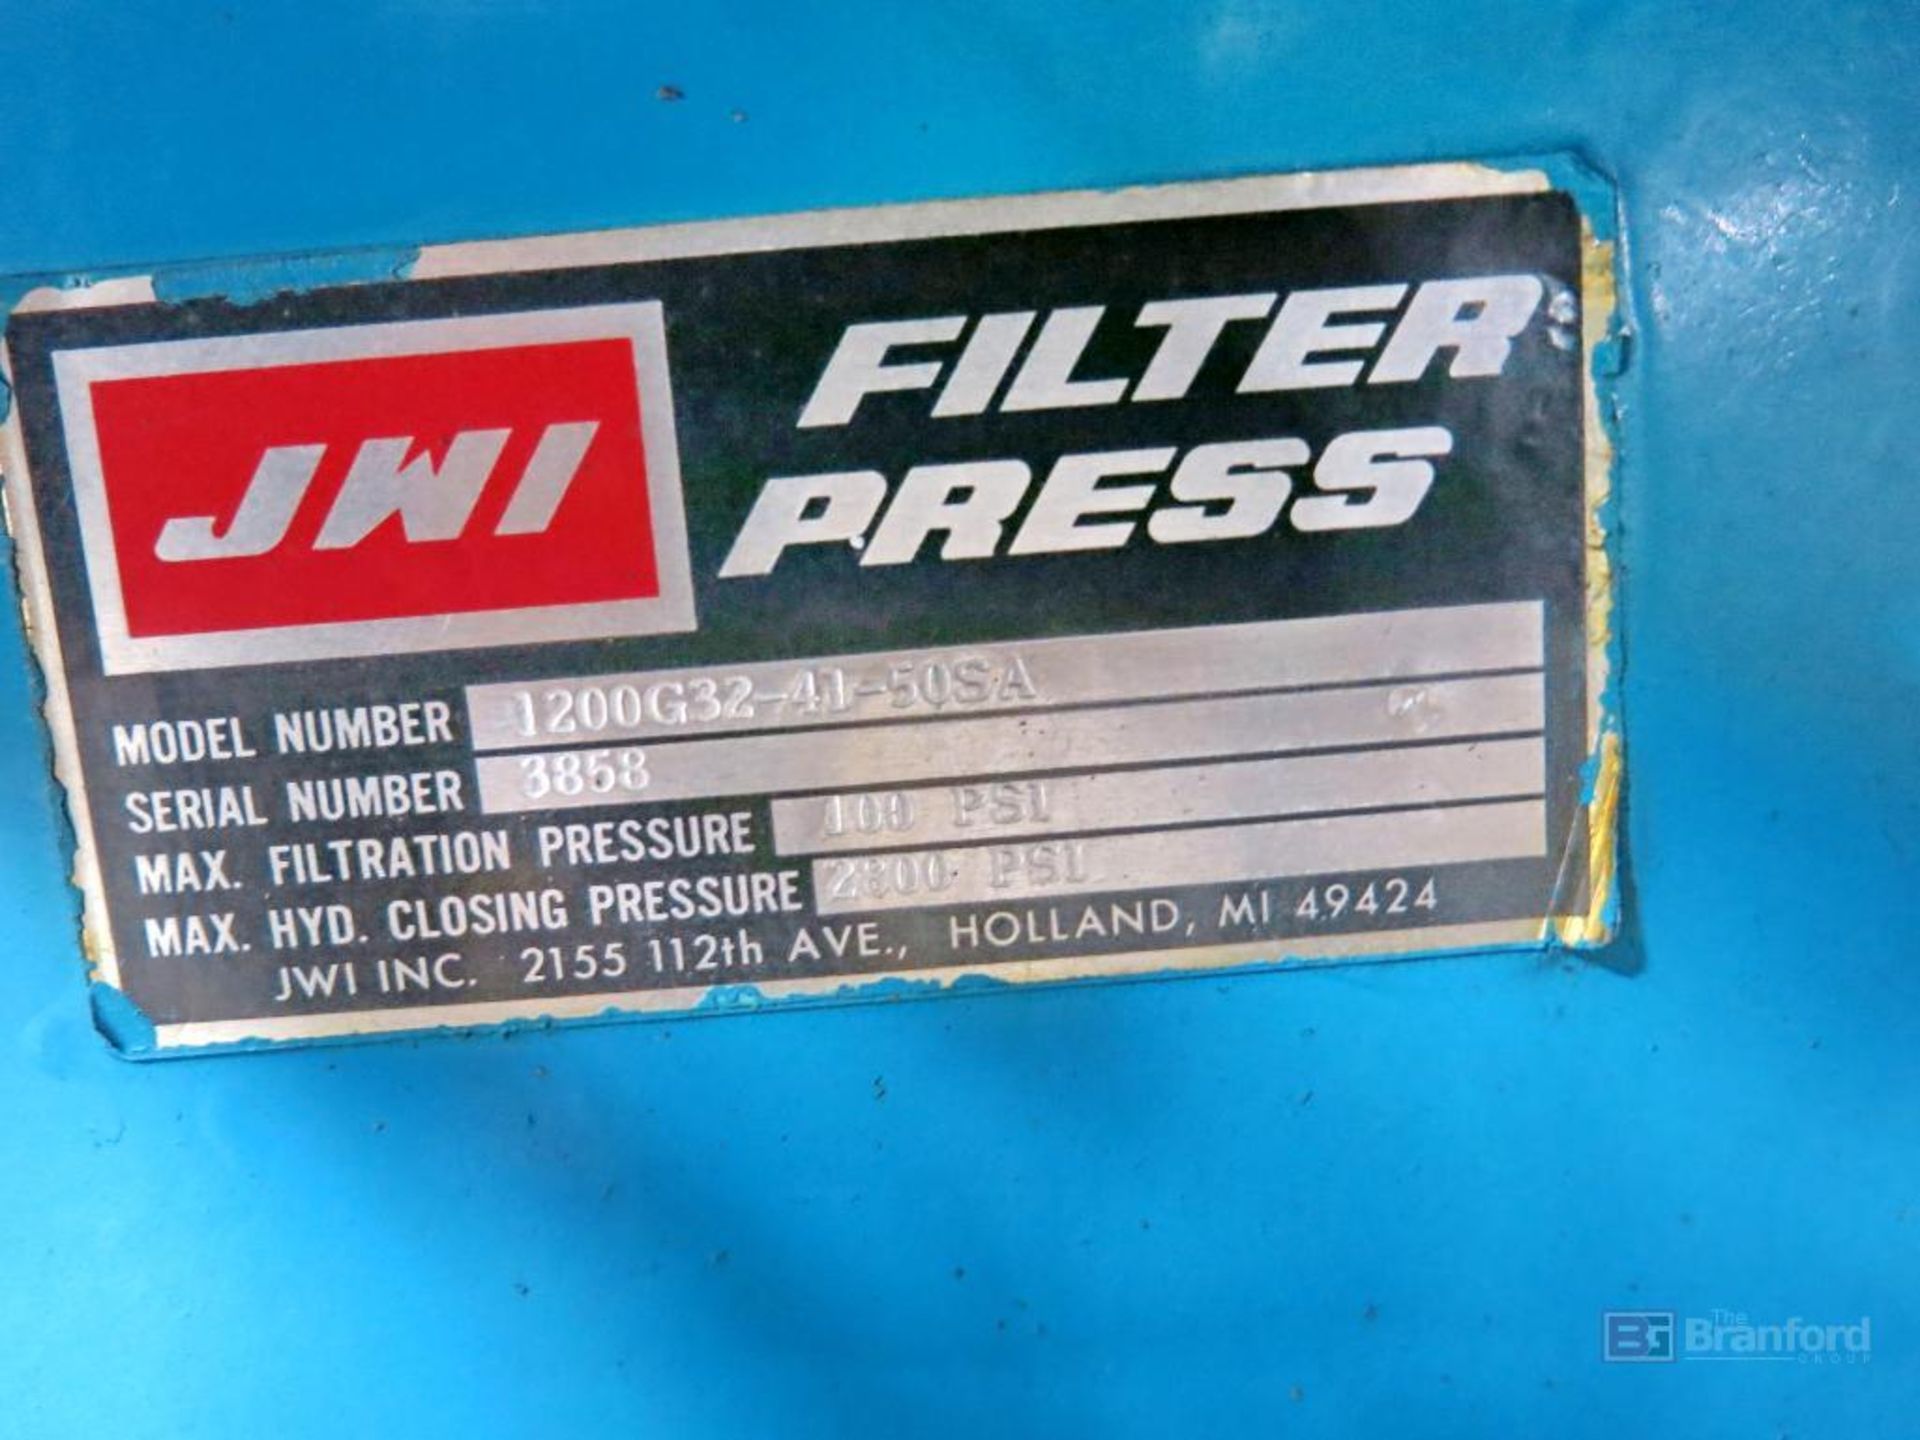 JWI Filterpress Model 1200G32-41-50SA - Image 5 of 9